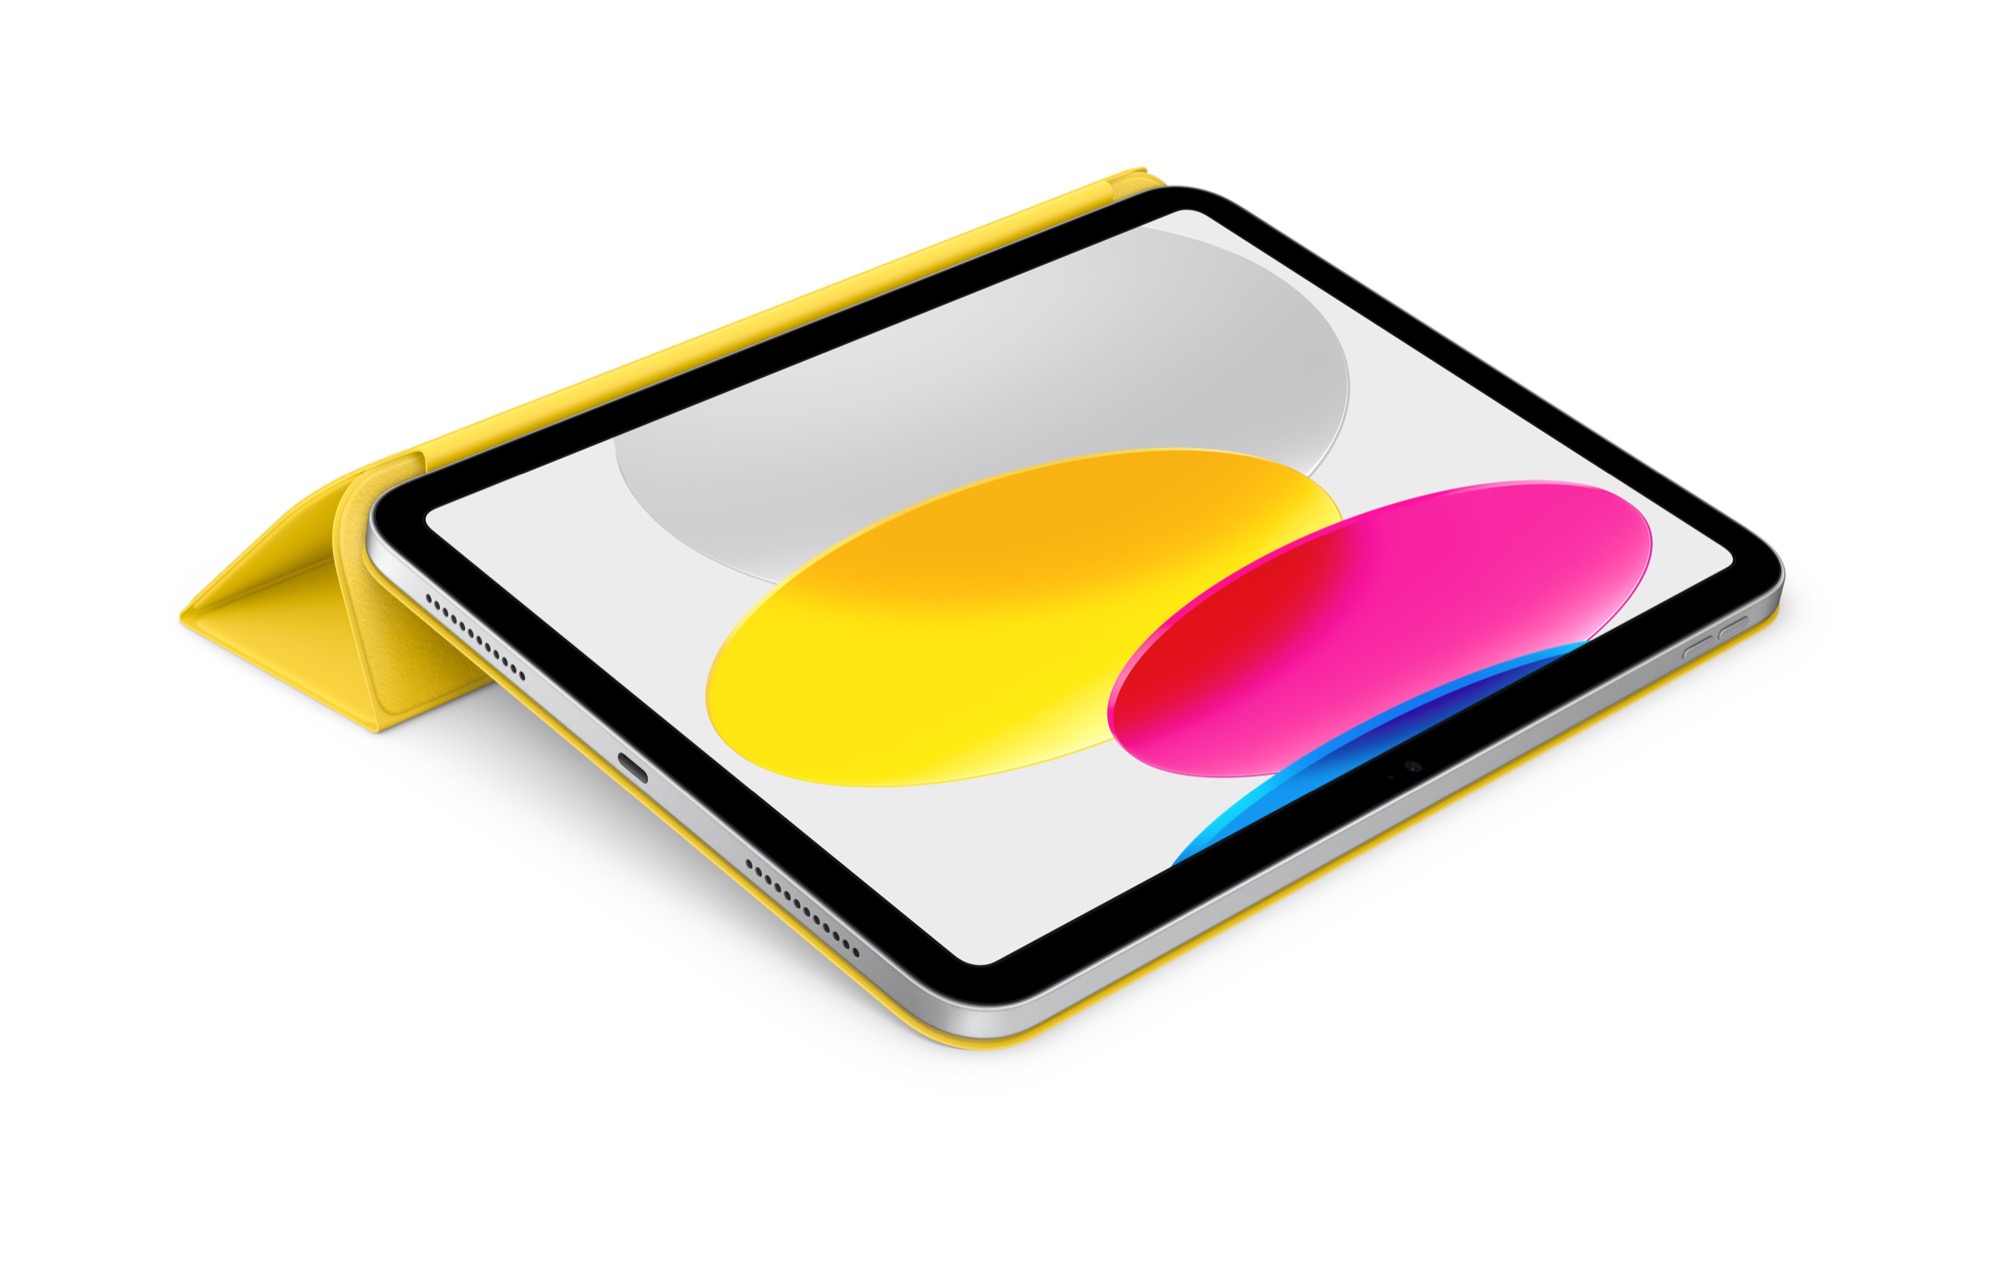 Smart Folio tizedik generációs iPadhez – citromsárga